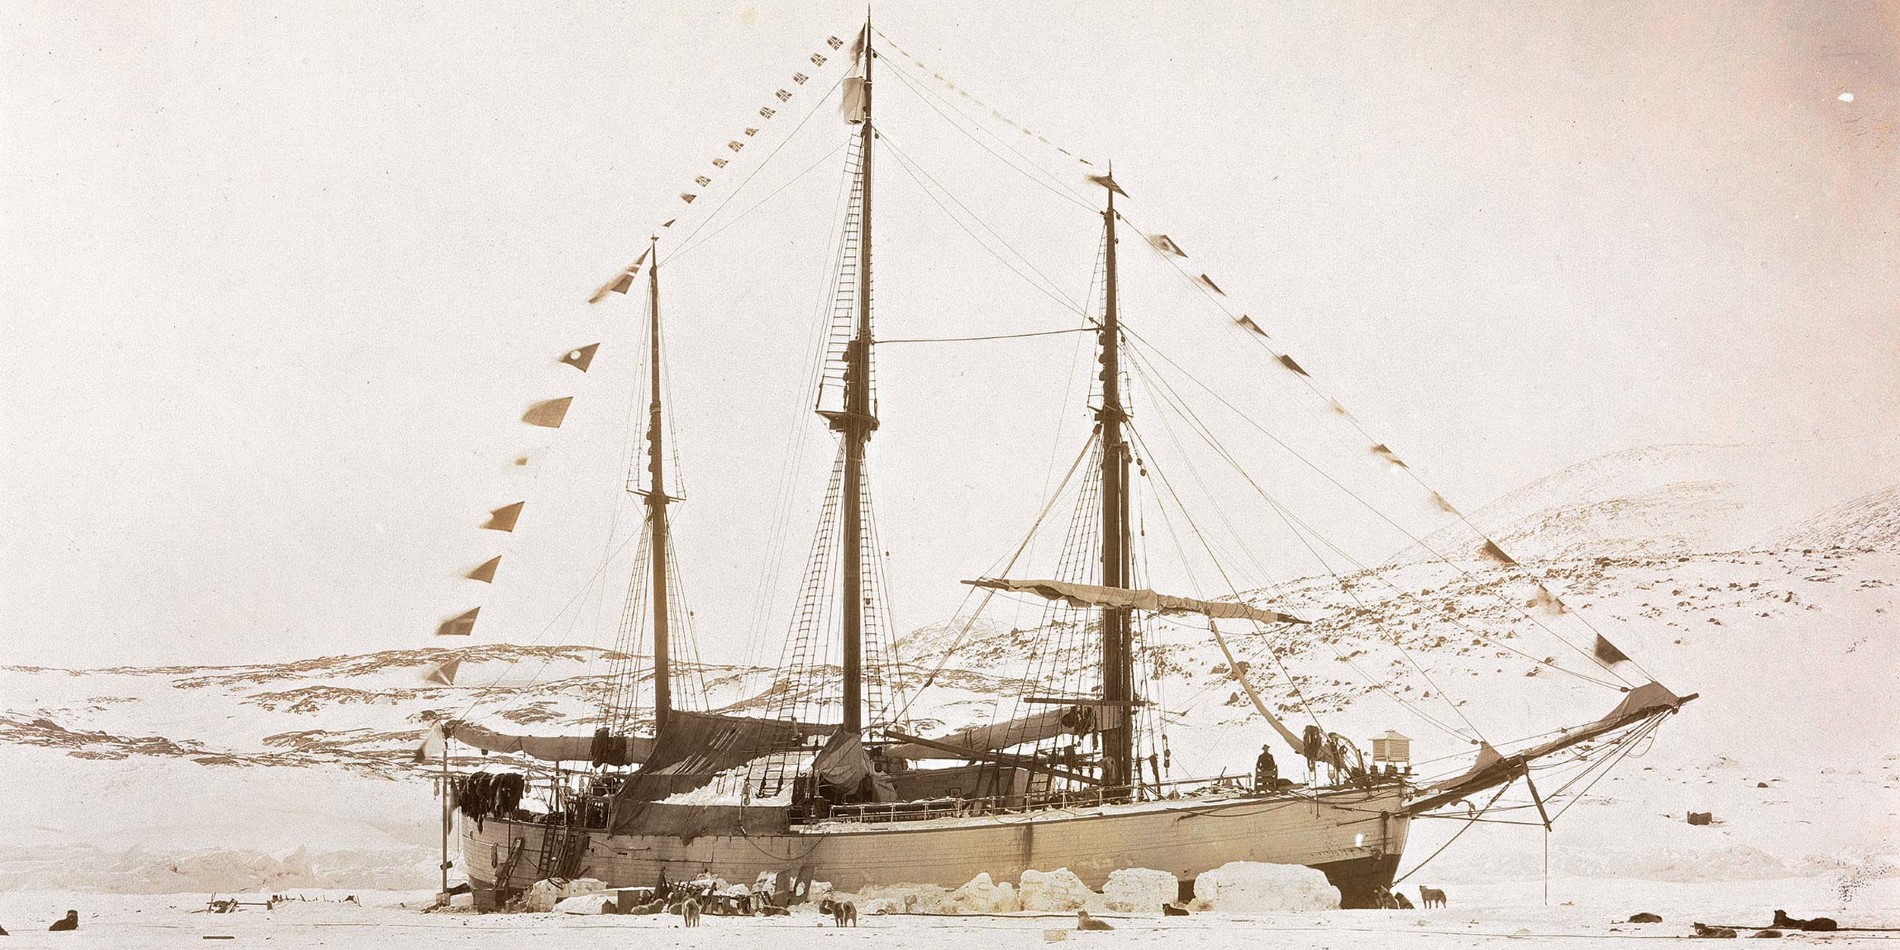 Wir segeln im Gefolge berühmter Entdecker und Schiffe wie Fram, und wir haben die arktischen Gewässer seit 1896 erkundet. 